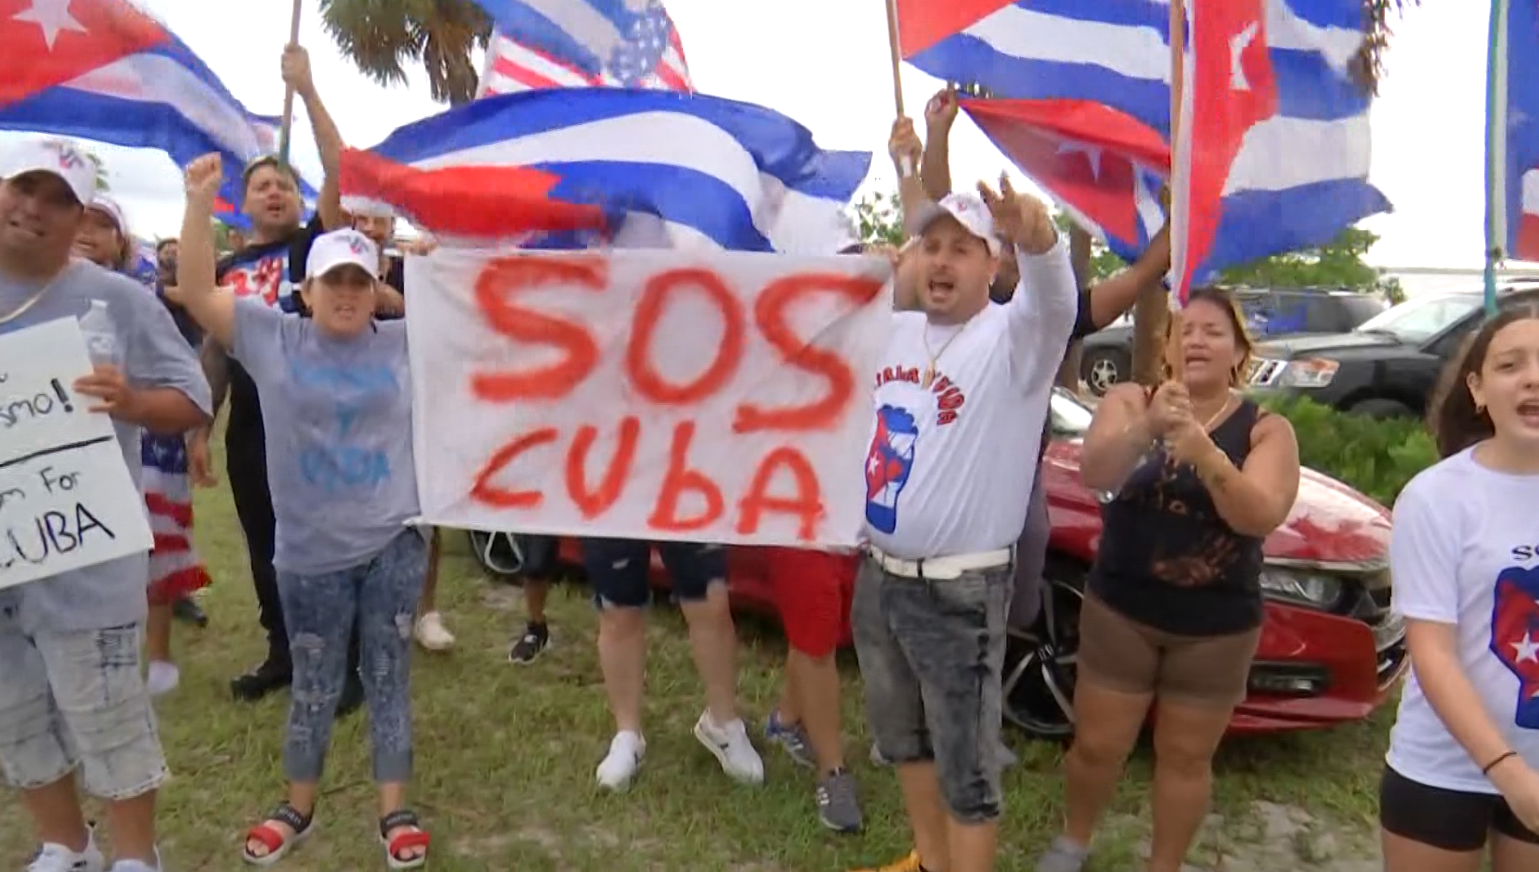 sanibel cuba protest